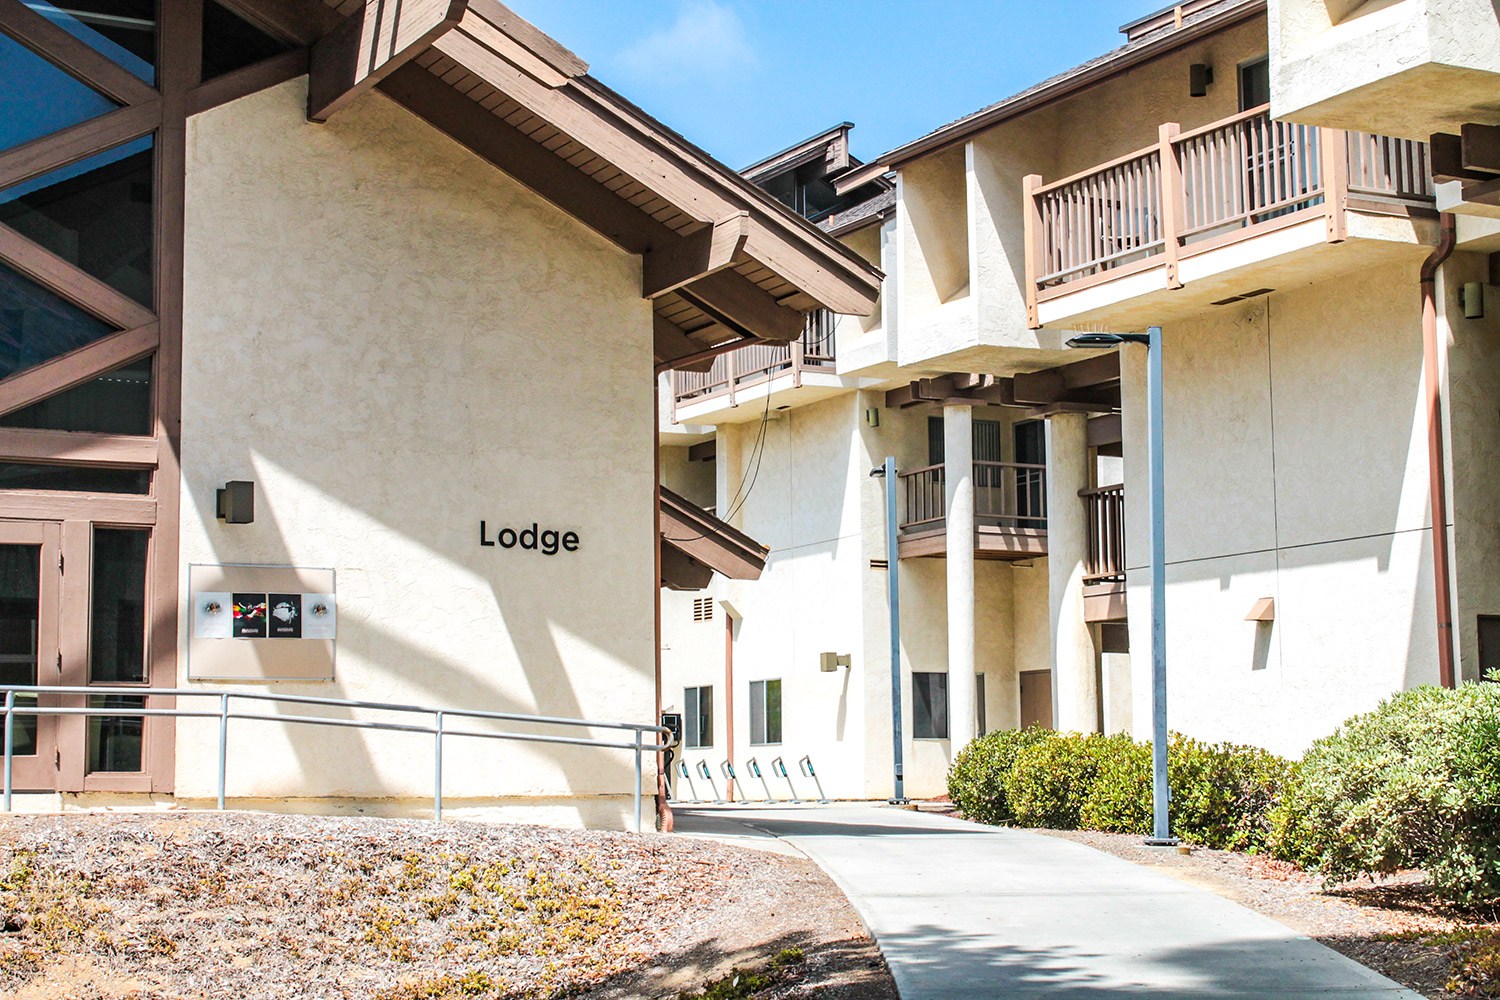 300-UCSD-Lodge